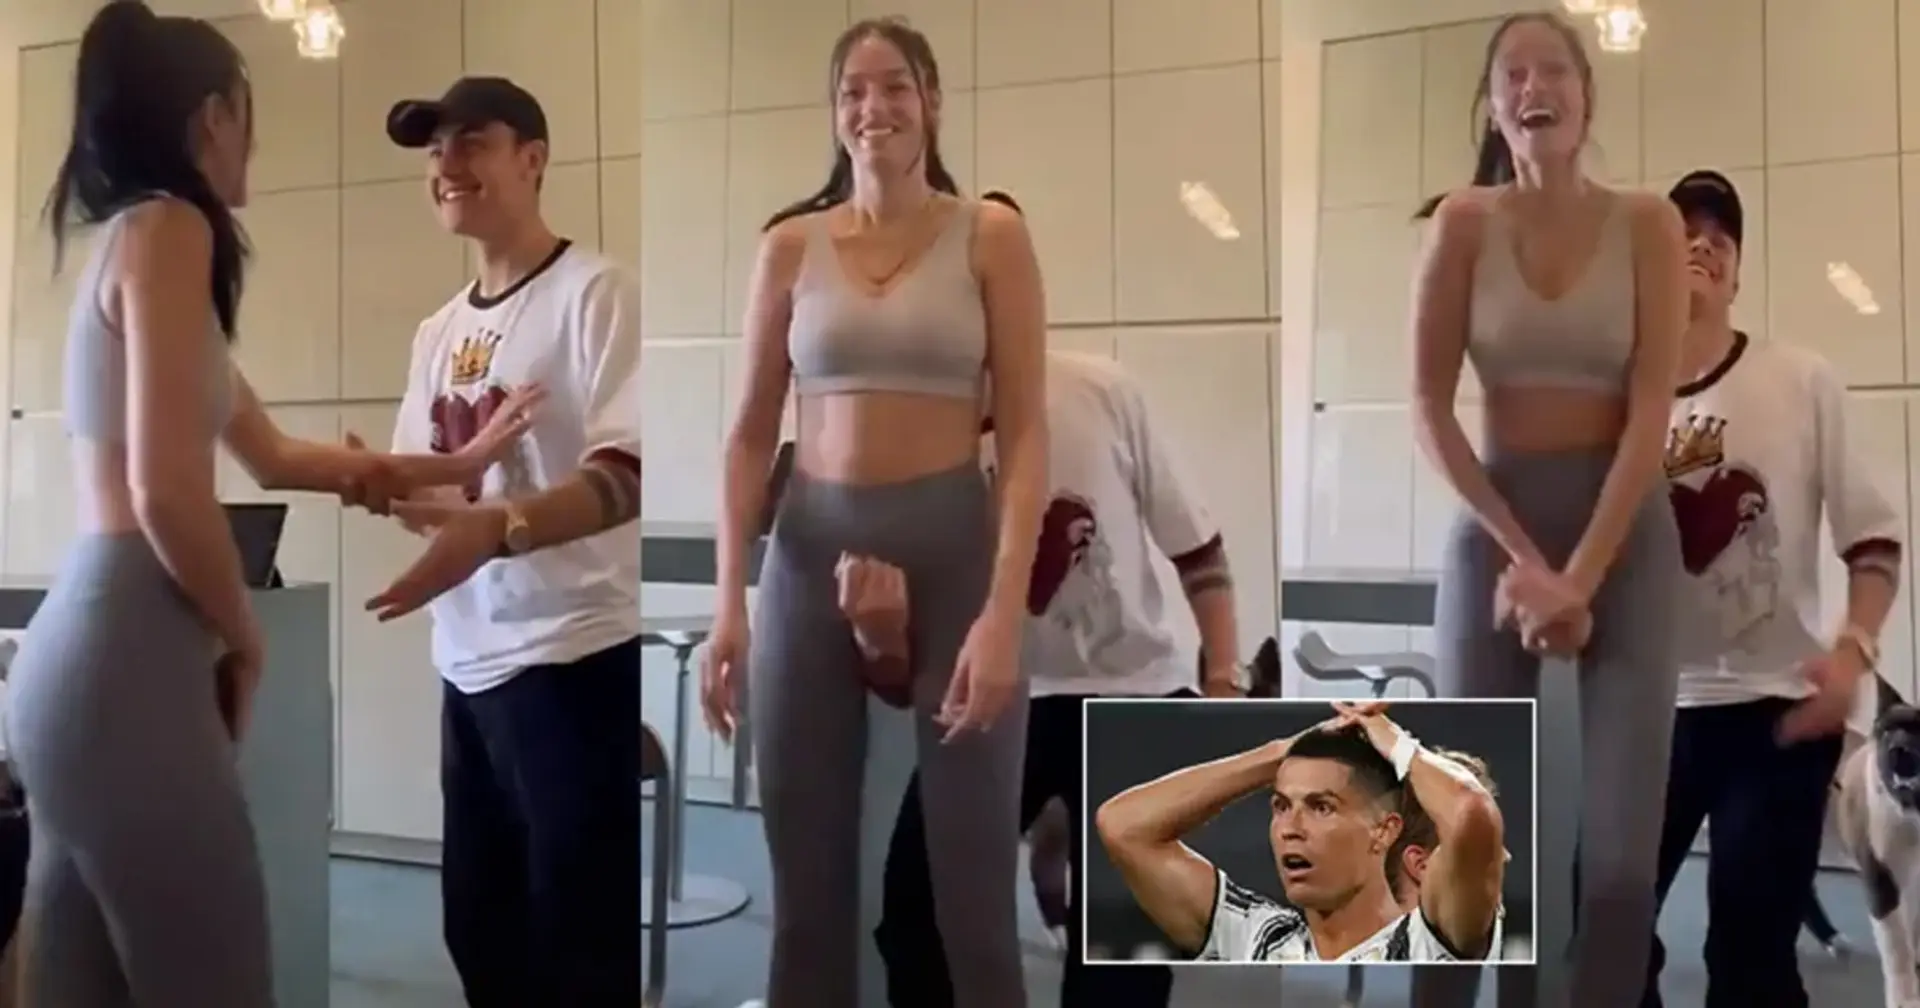 Paolo Dybala y su novia cargan un video 'inapropiado' de Crotch Lift, y TikTok lo elimina de inmediato